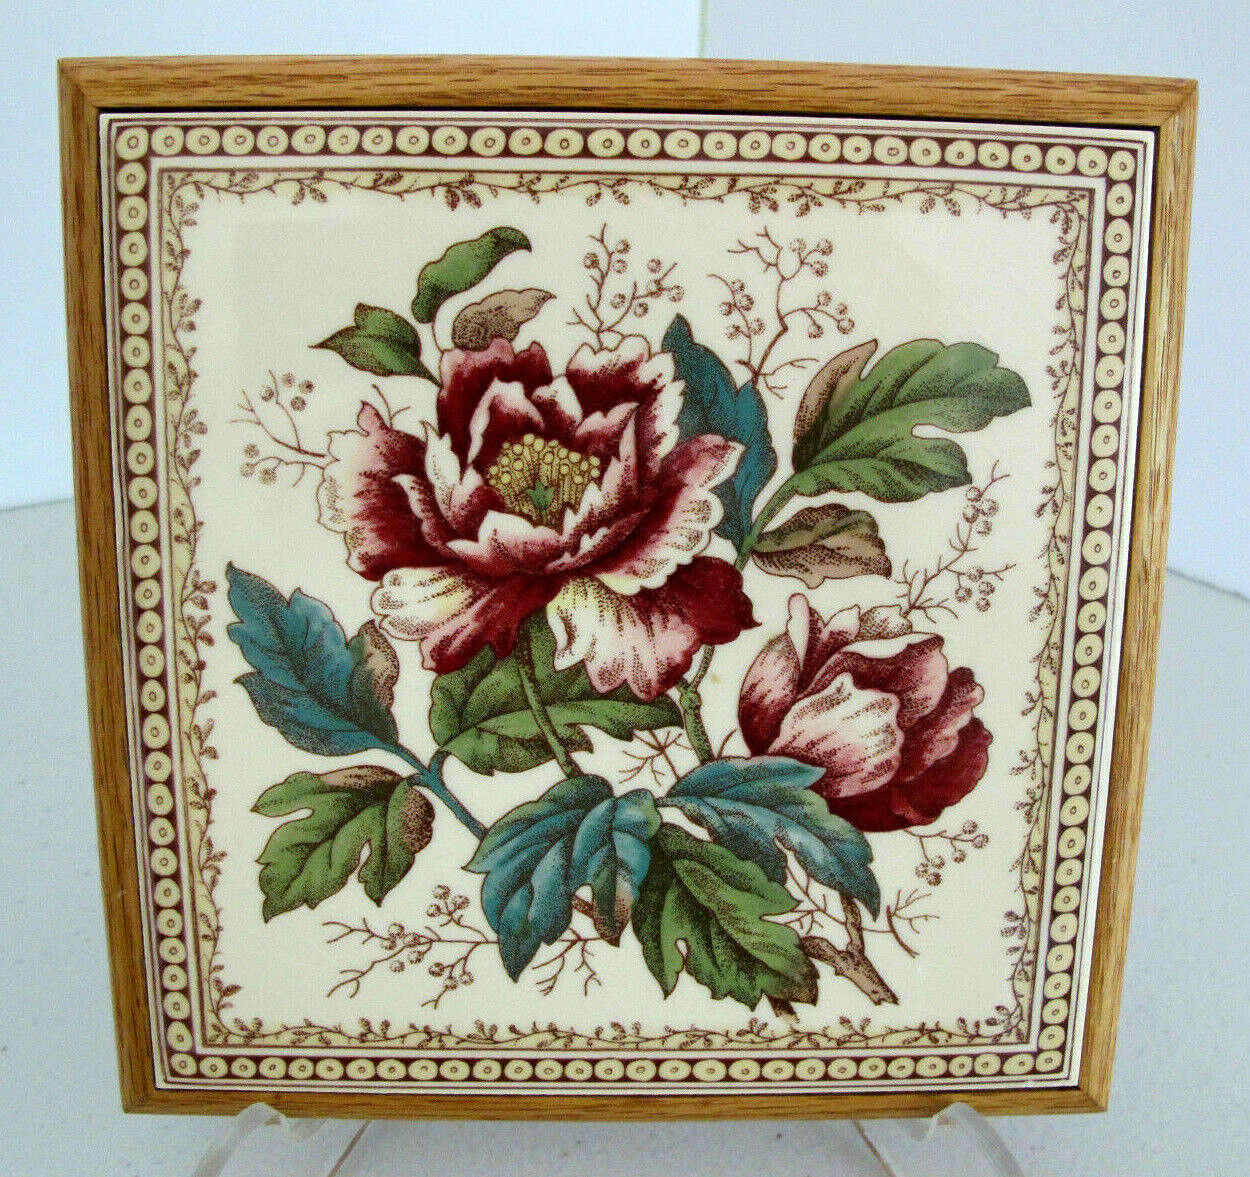 H & R Johnson Vintage Wood Framed Decorative Floral Tile Trivet~Made in England